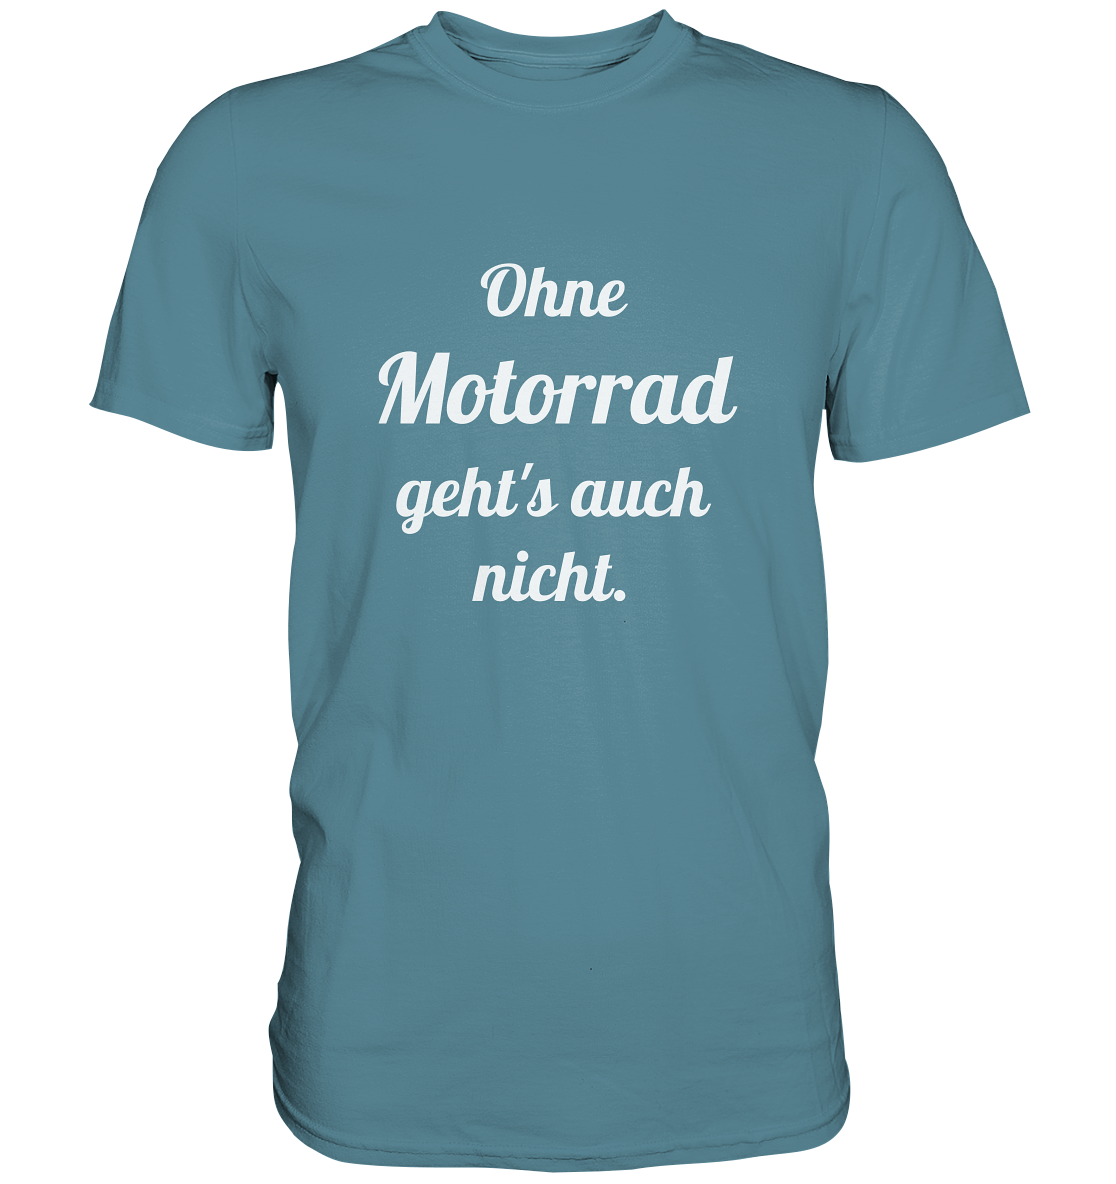 Herren-T-Shirt, Rundhals mit Aufdruck "Ohne Motorrad geht's auch nicht", hell blau